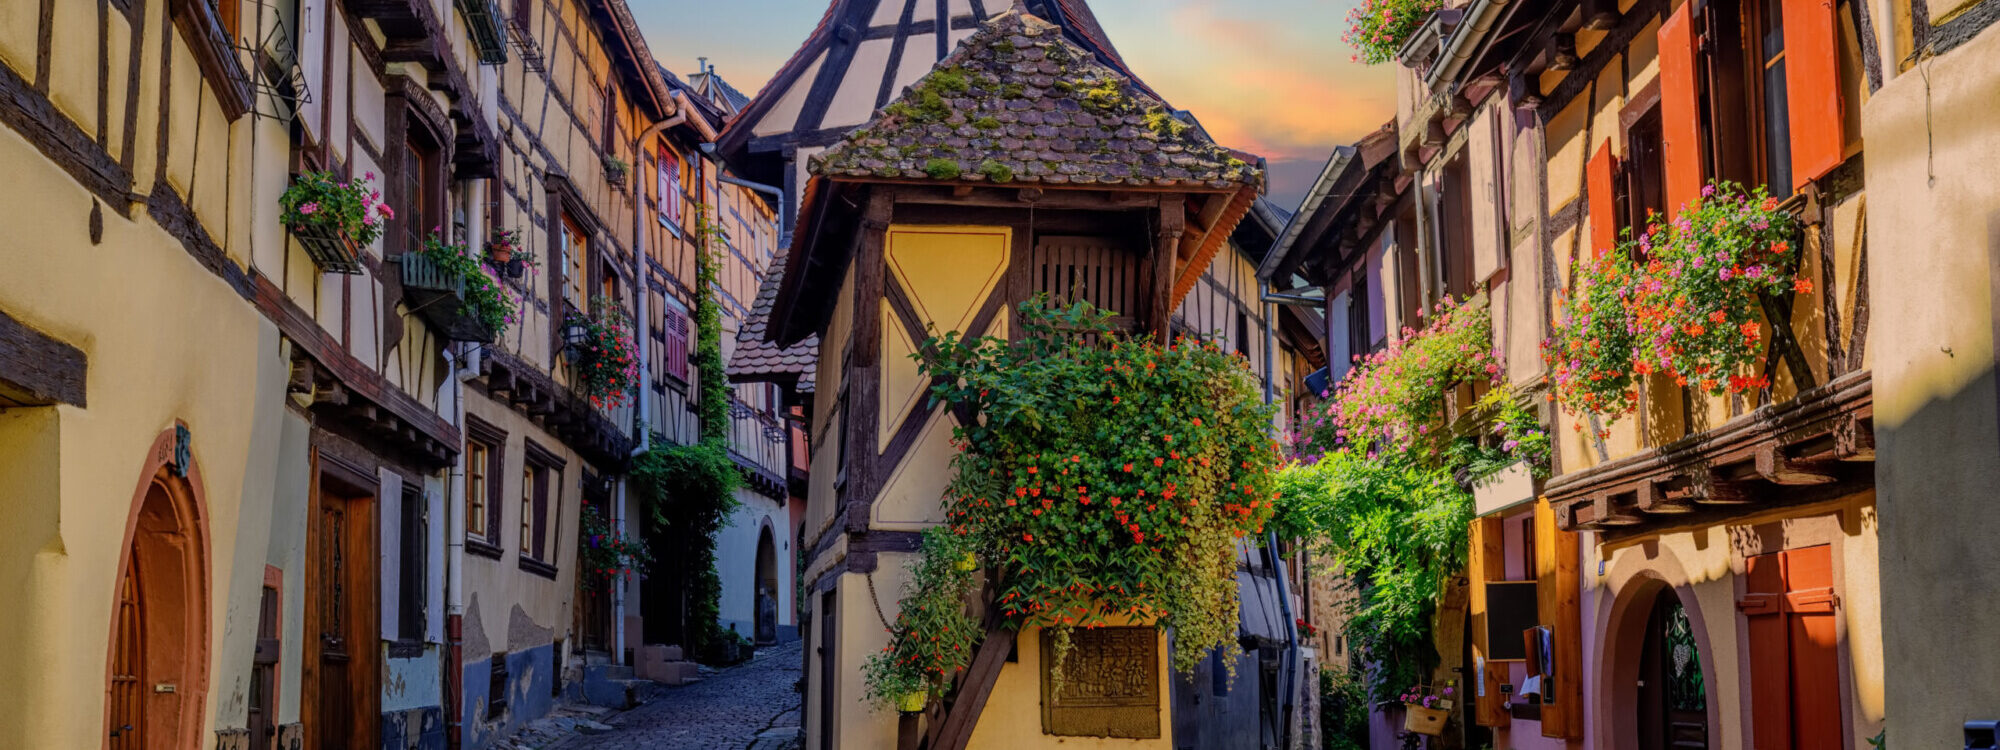 Activités touristiques &#038; culturelles près d’Osenbach, en Alsace dans le Haut-Rhin (68) Wittelsheim